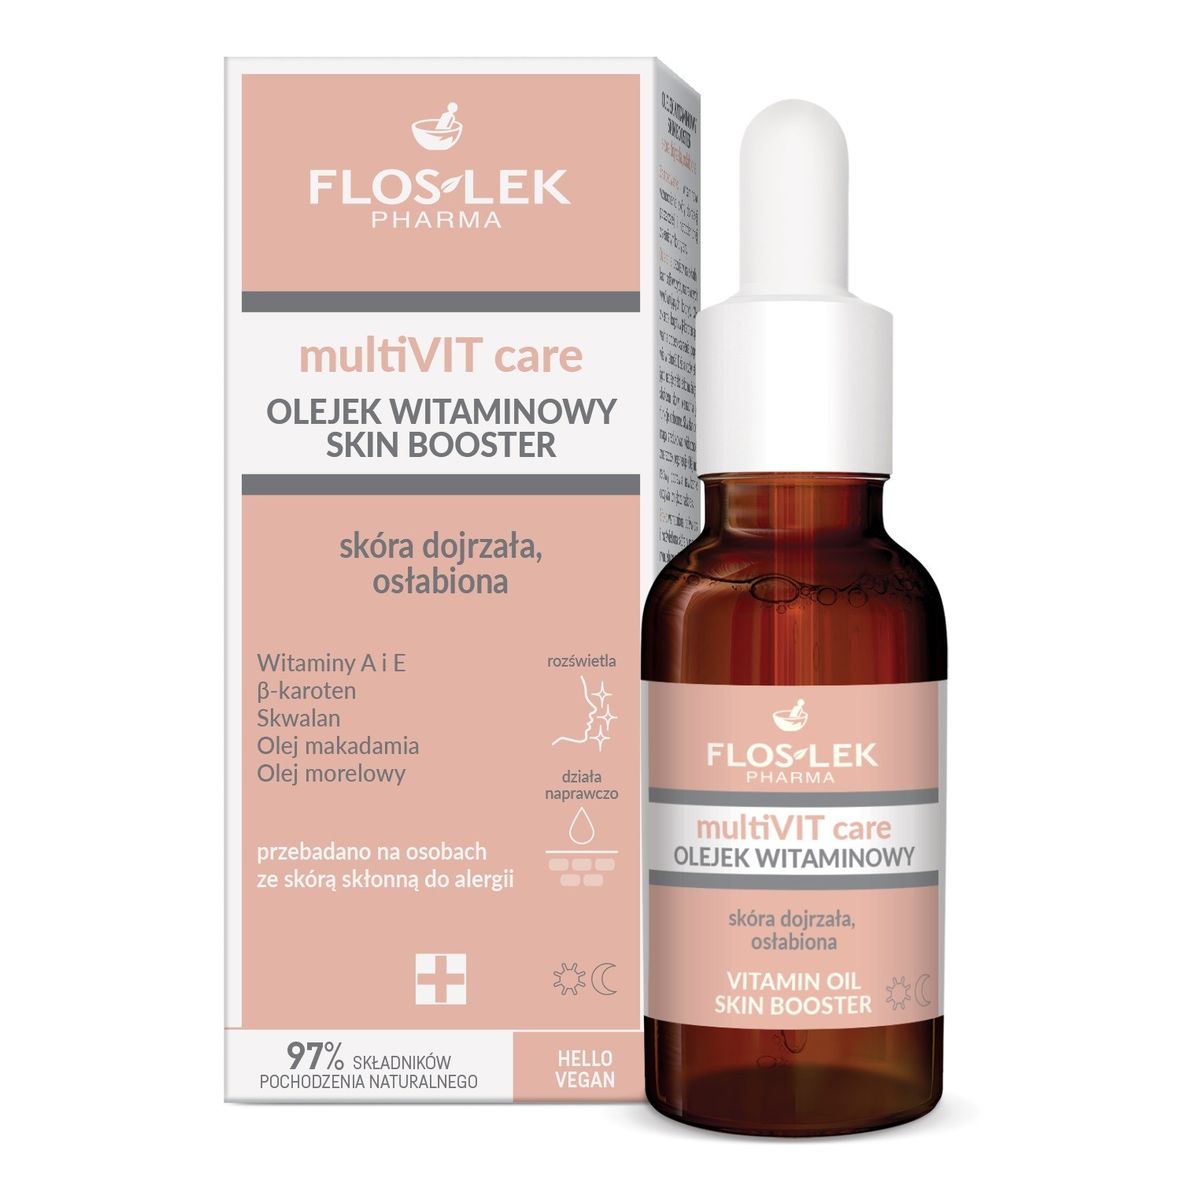 FlosLek PHARMA MultiVIT Care Olejek witaminowy skin booster-skóra dojrzała,osłabiona 30ml